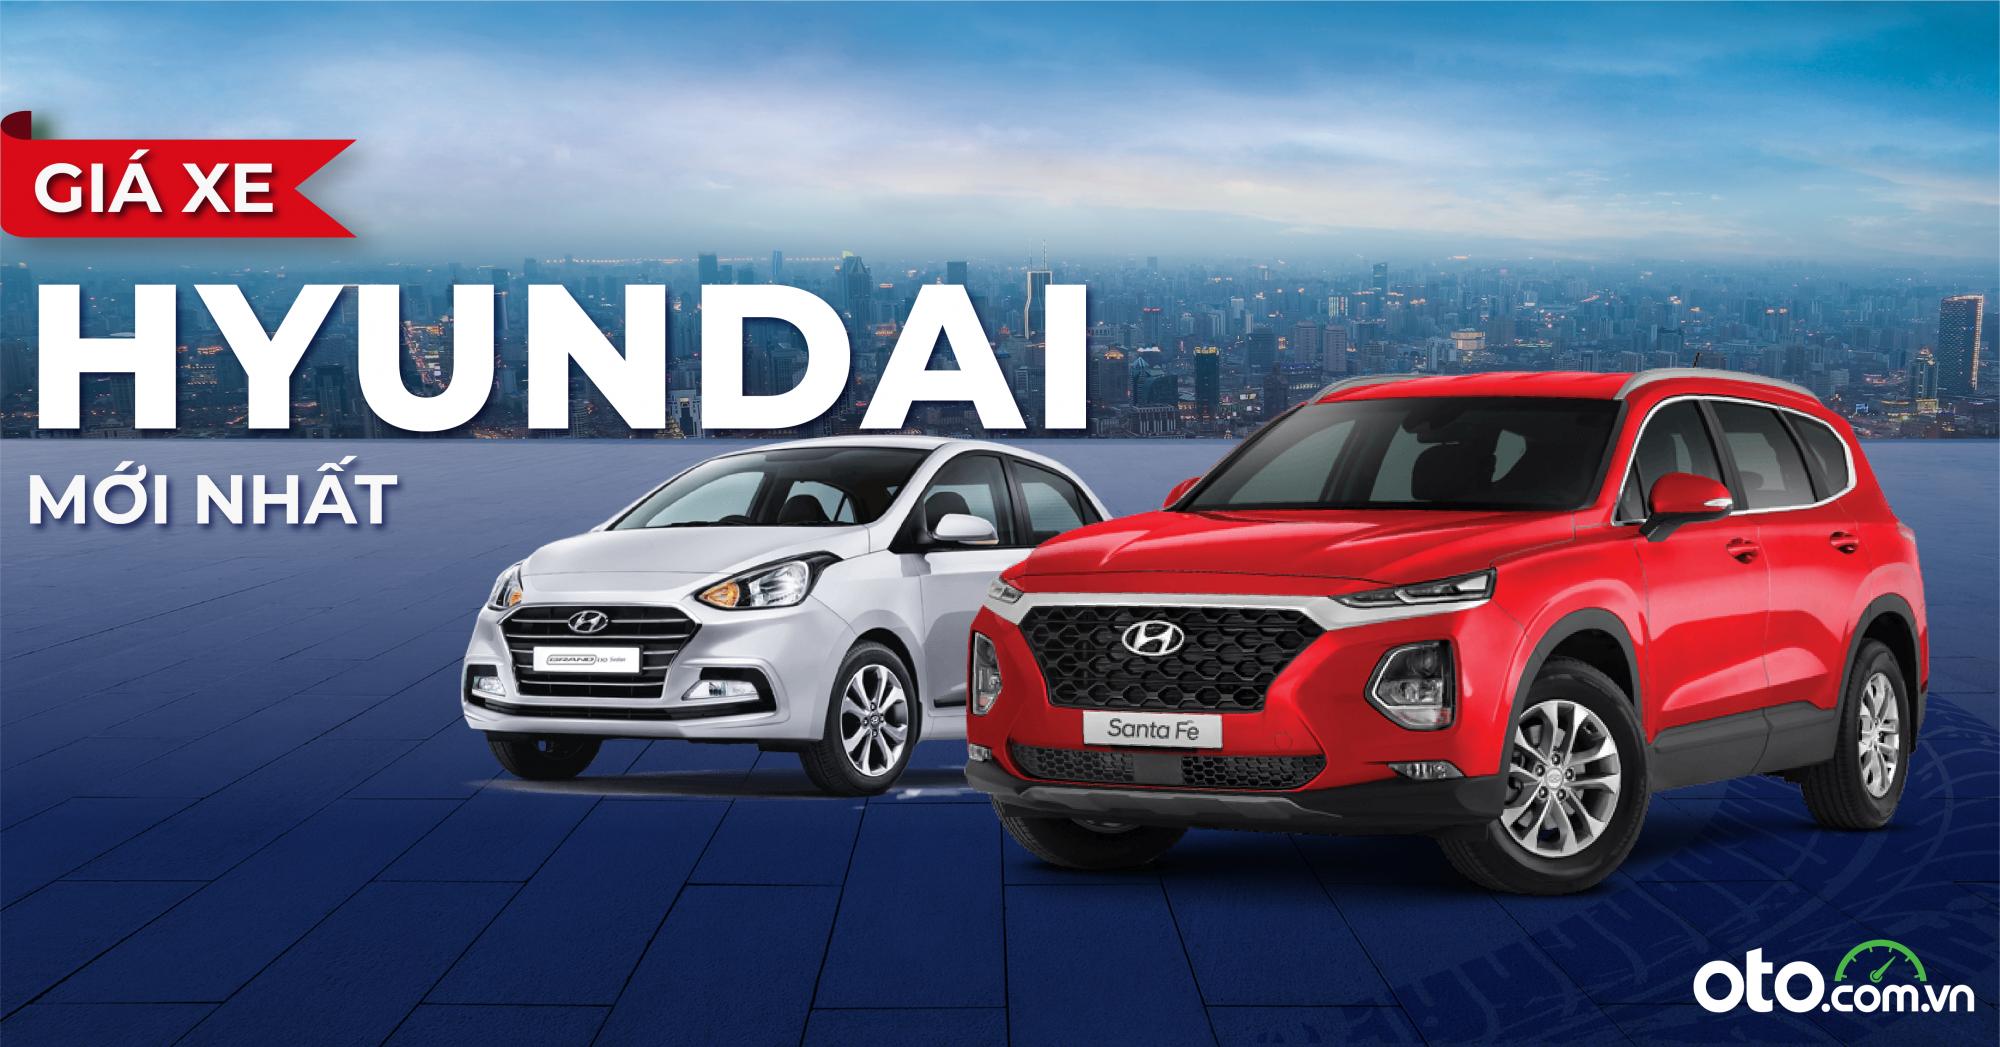 Bảng giá xe Hyundai 2023 mới nhất kèm tin khuyến mại tại Việt Nam (4/2023)